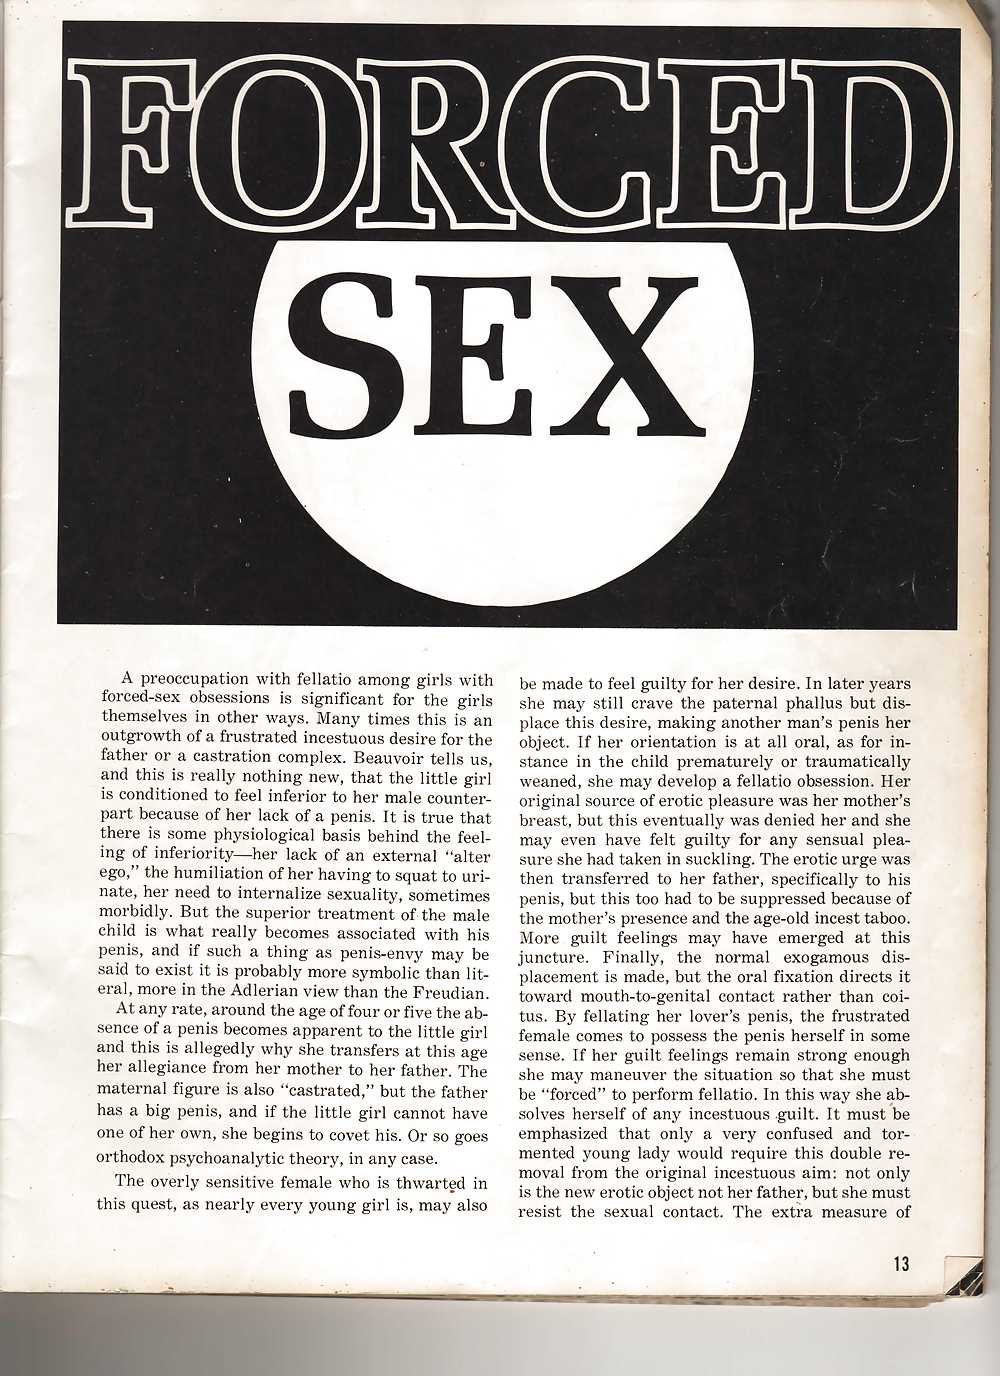 ヴィンテージ雑誌 teeny floppers vol 06 no 01 - 1973
 #2155221